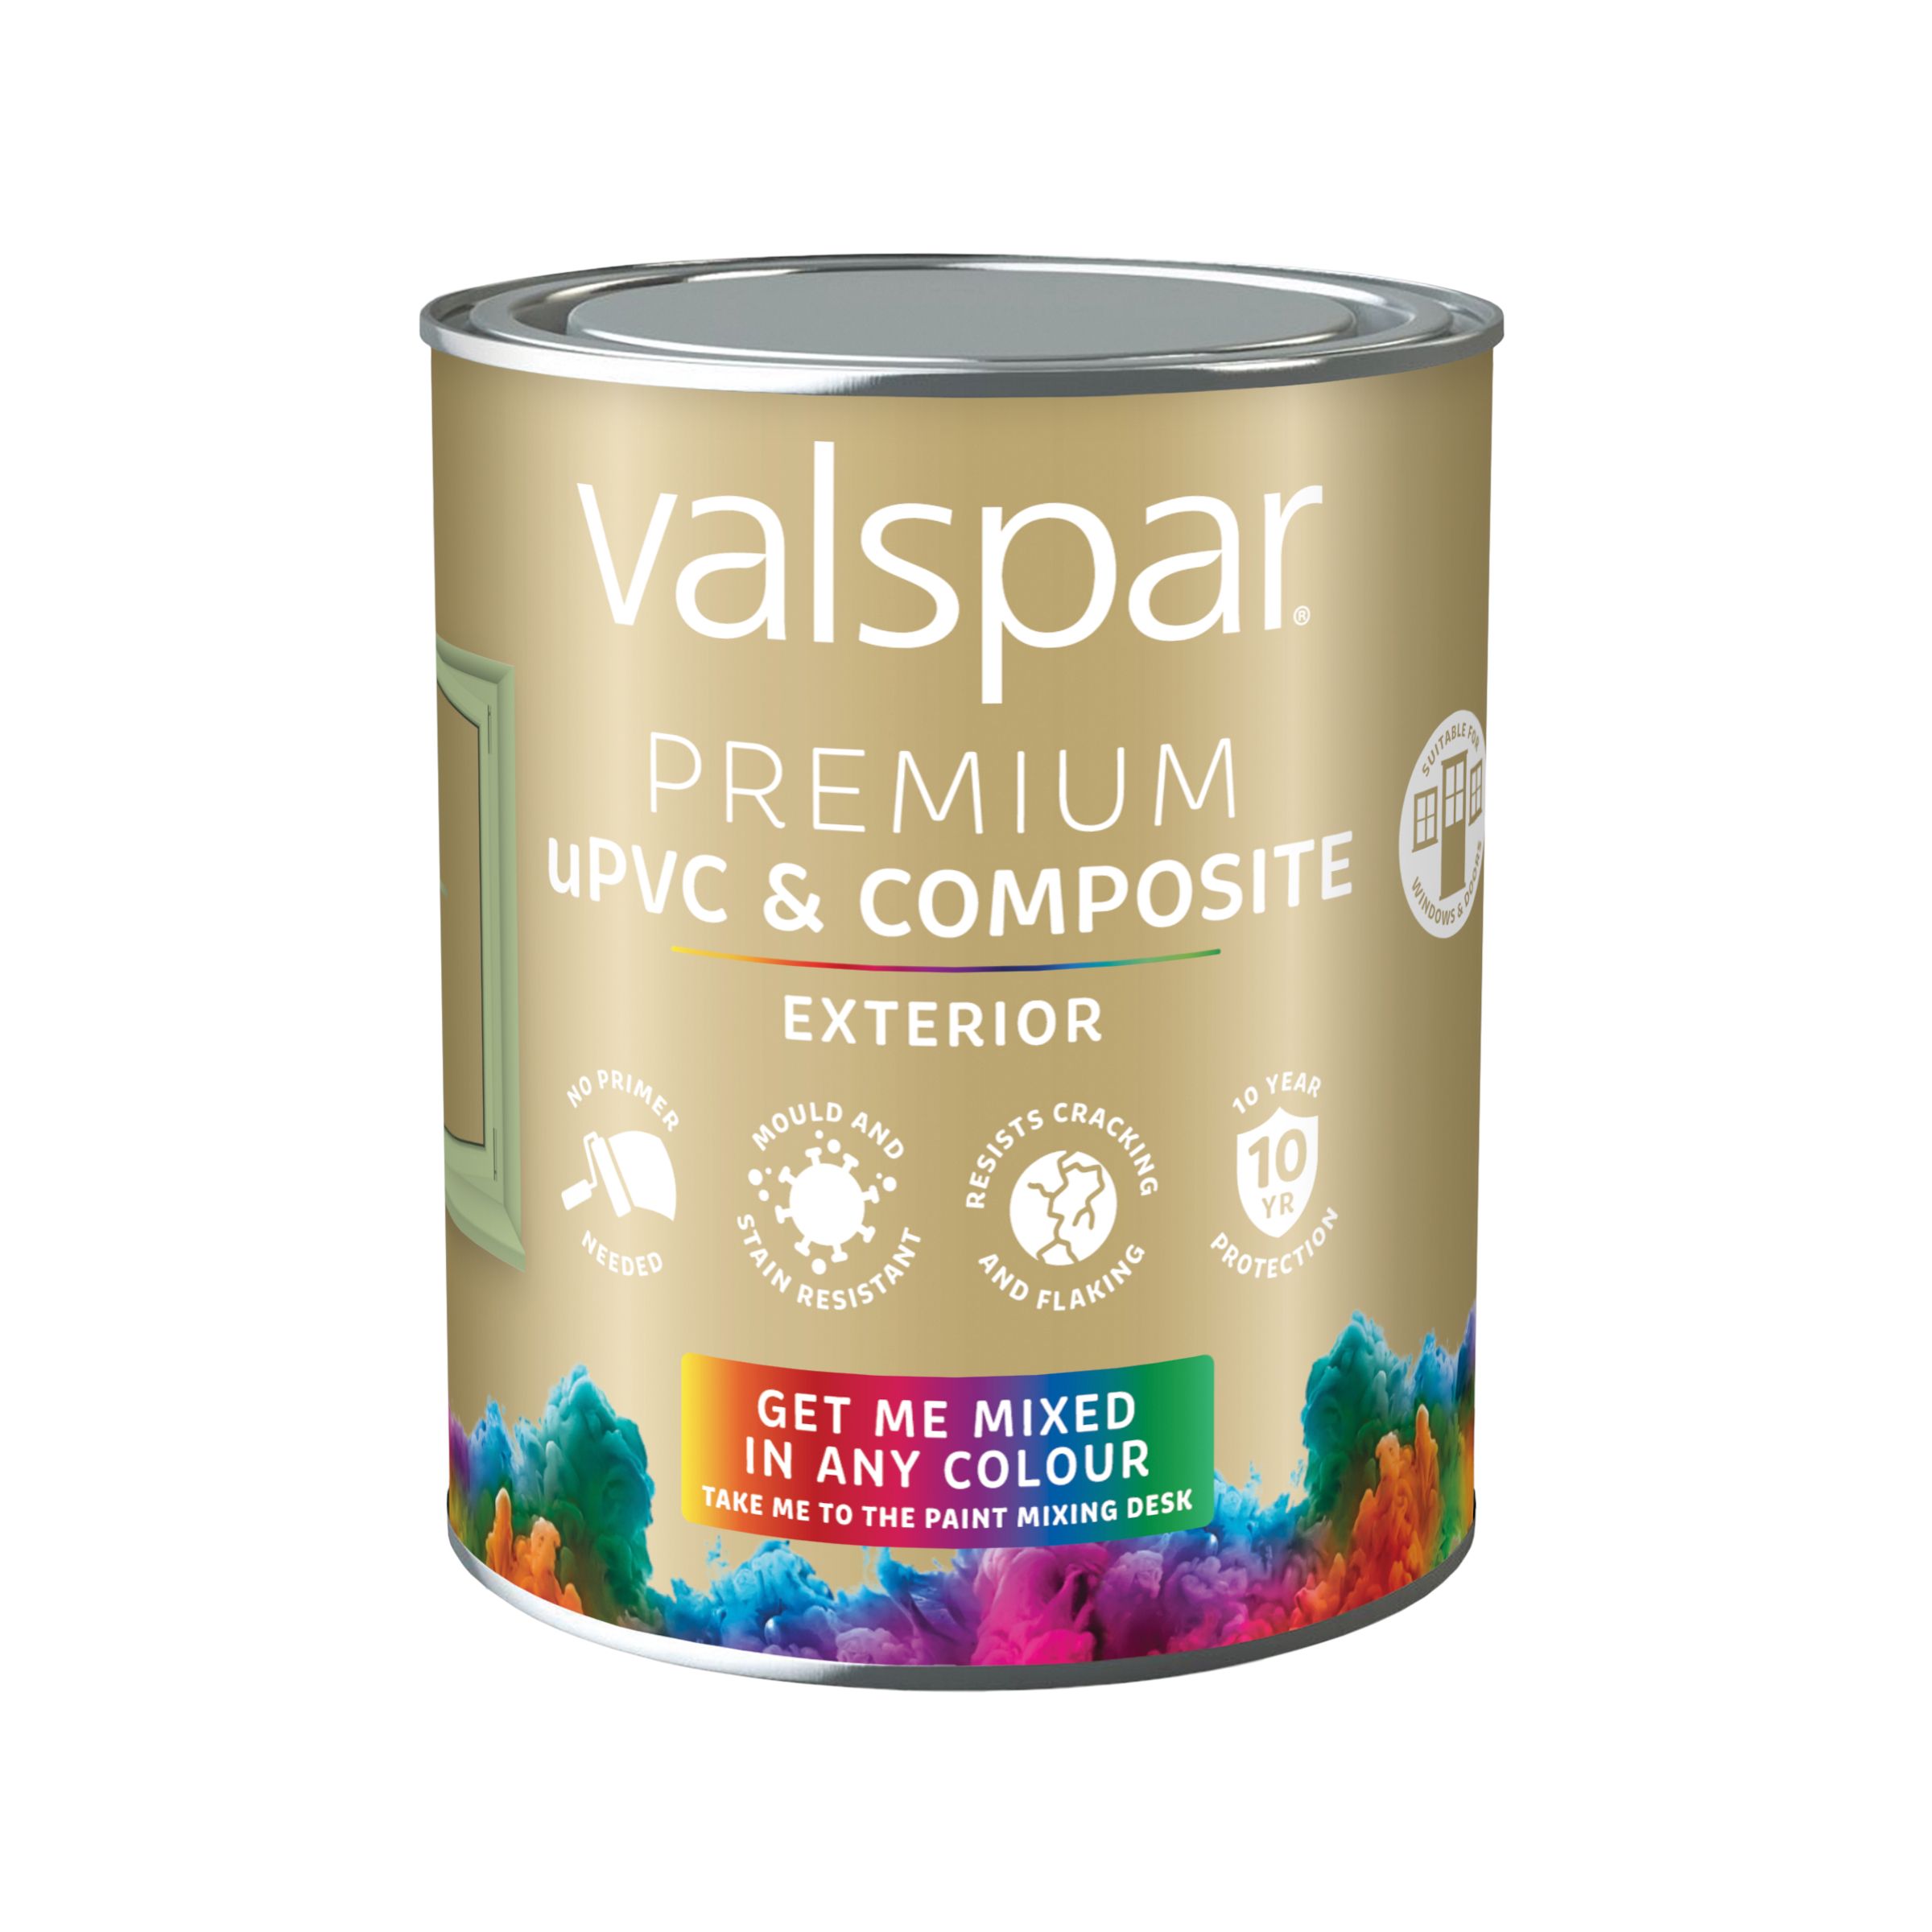 Valspar Premium Exterior uPVC & composite Multi-surface Satin Paint, Base 4, 750ml